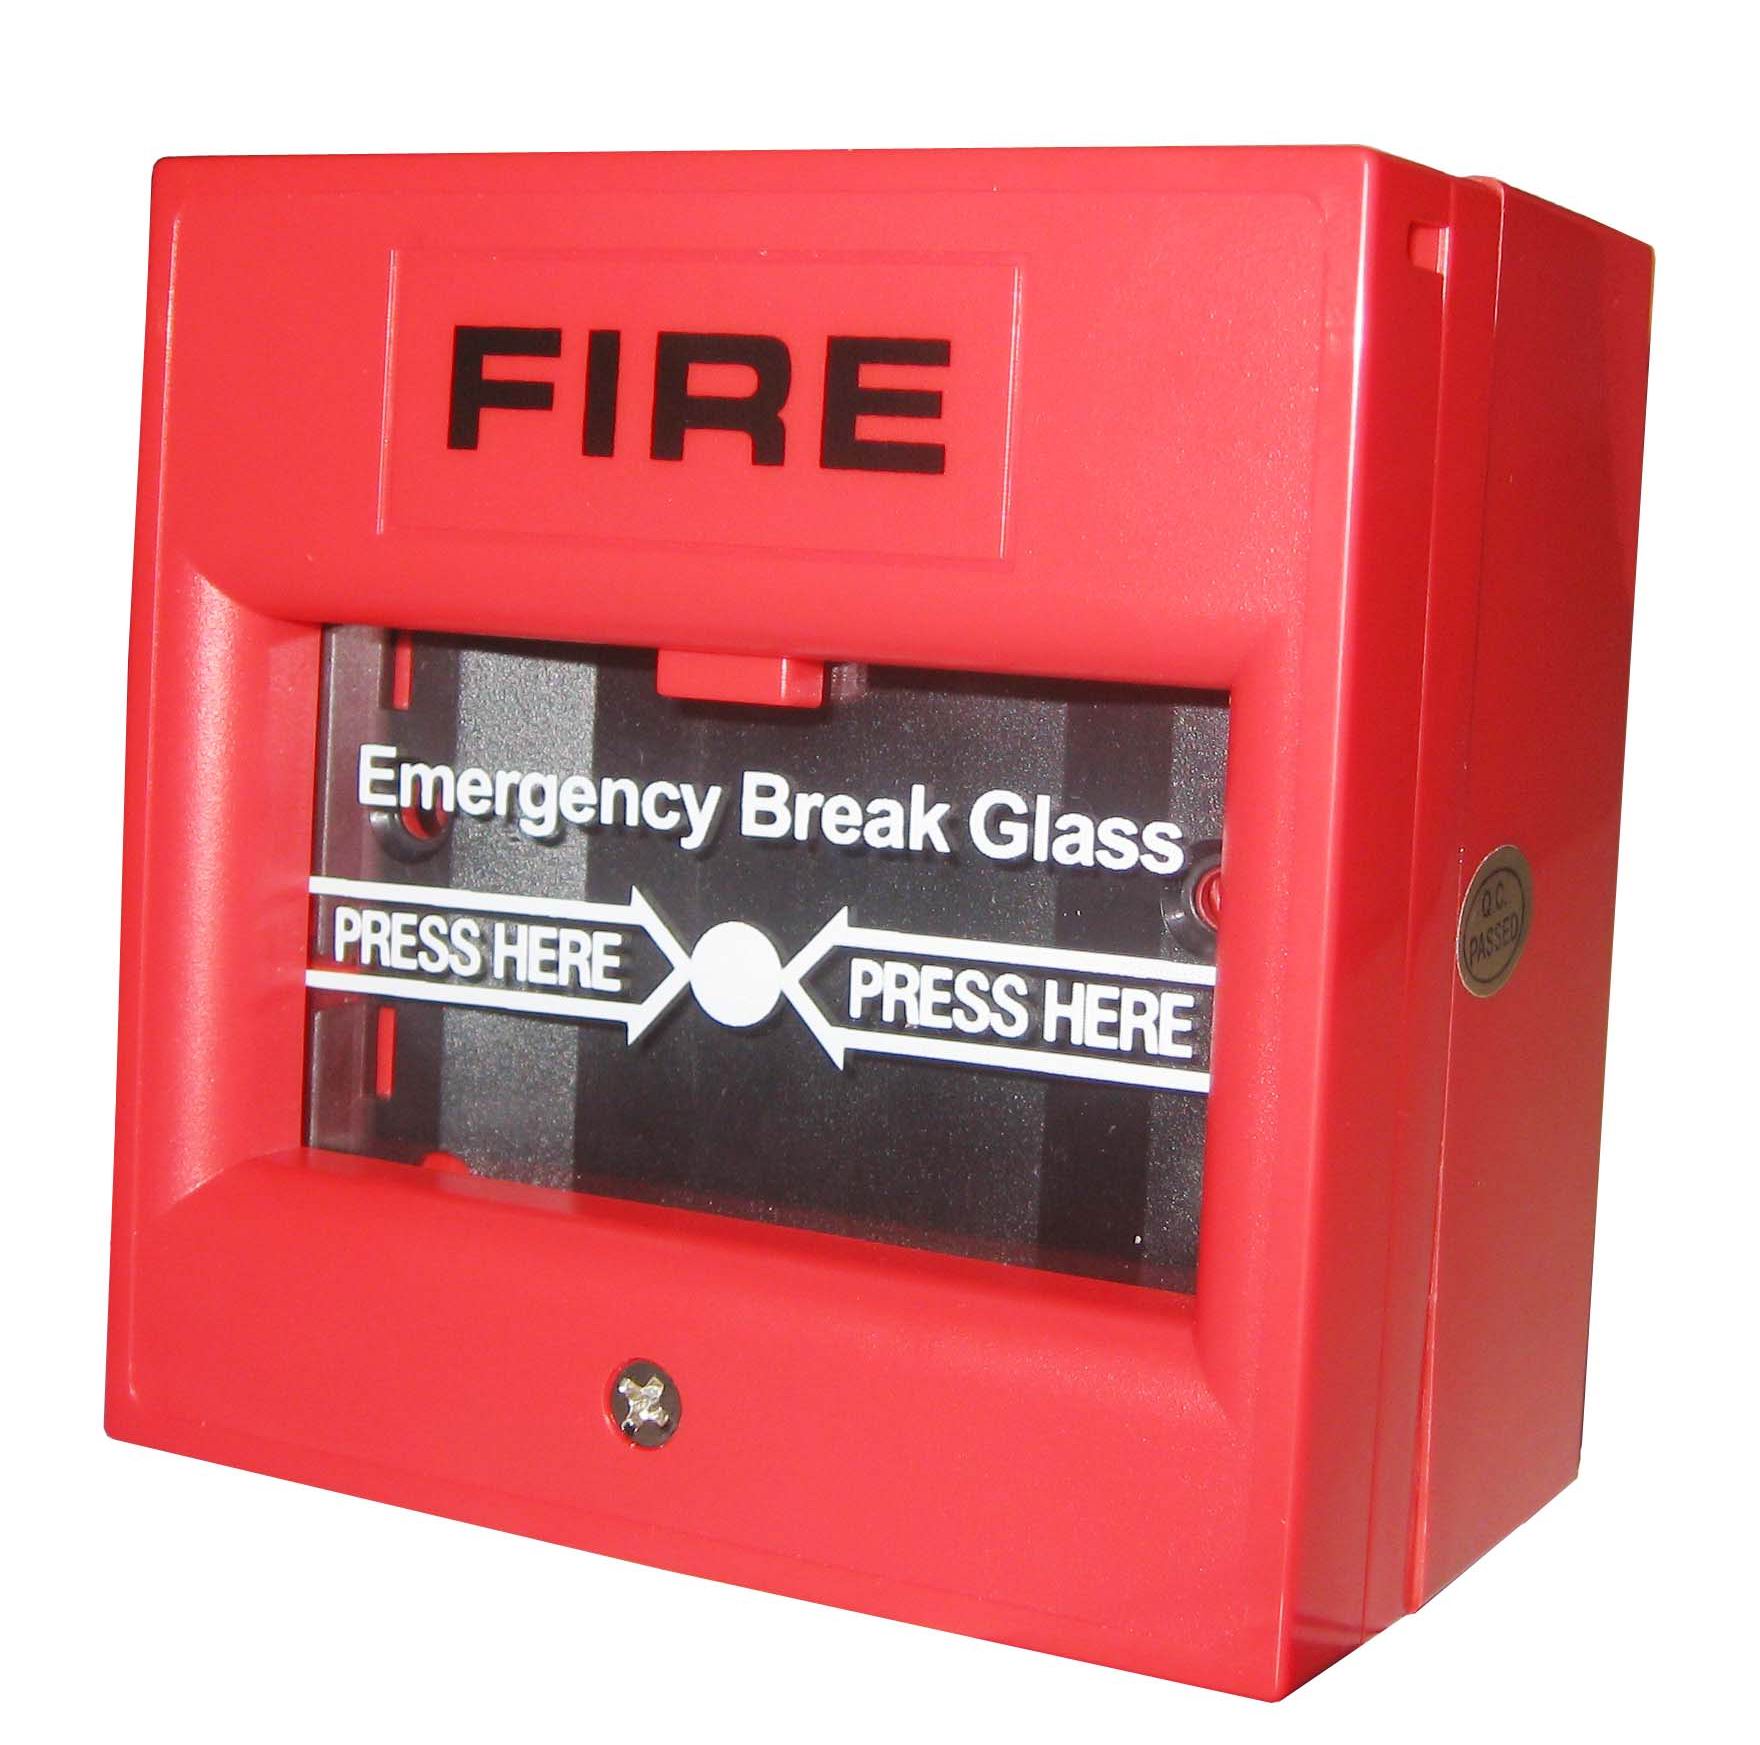 กล่องไฟอราม FIRE Emergency Break Glass สัญญาณเตือนภัยไฟไหม้ สีแดง